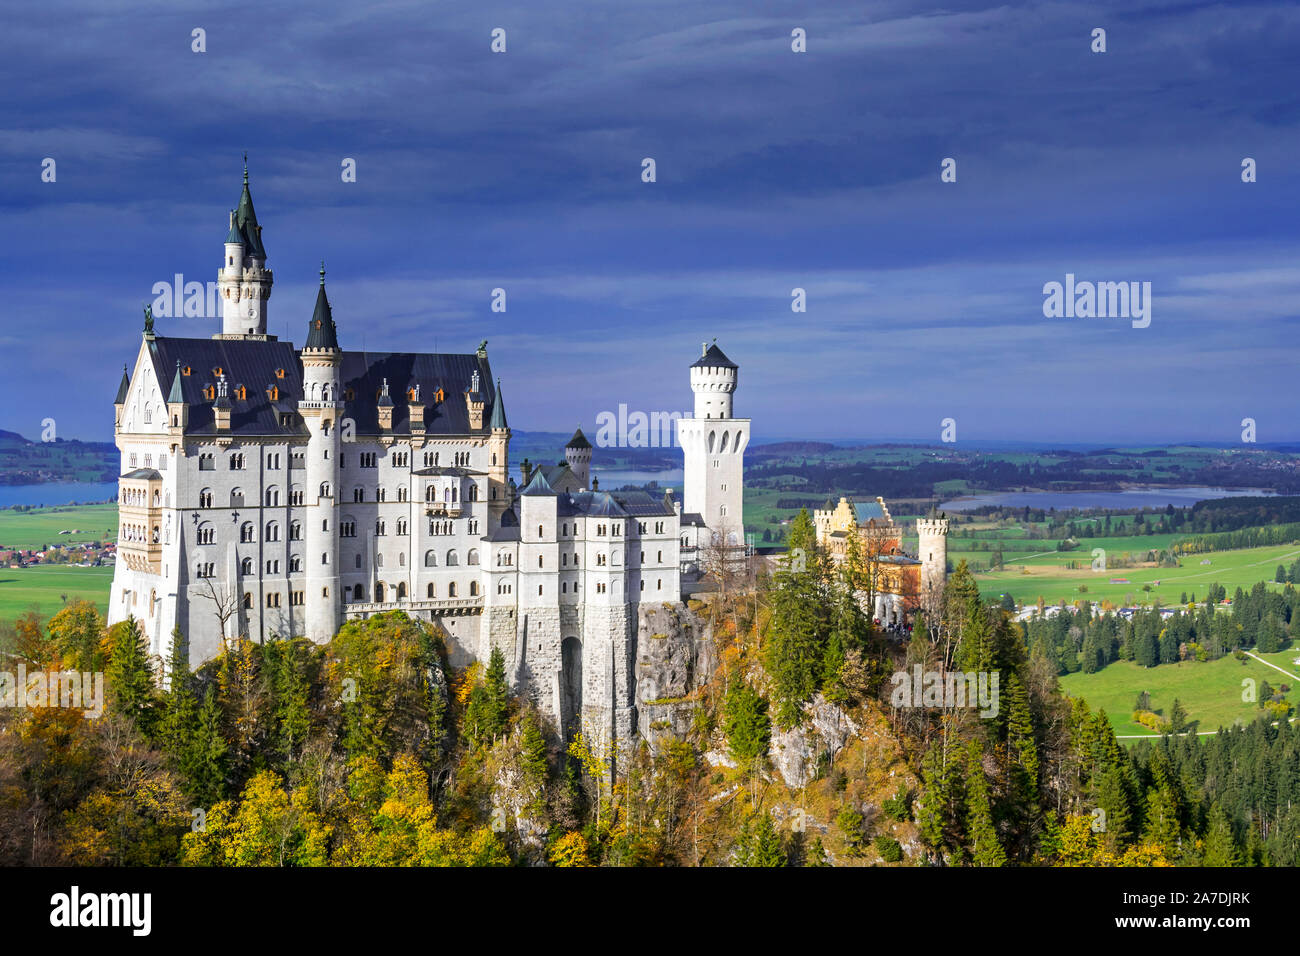 Le château de Neuschwanstein vu de Marienbrücke en automne / fall, 19e siècle palais néo-romane à Schwangau, Bavière, Allemagne Banque D'Images